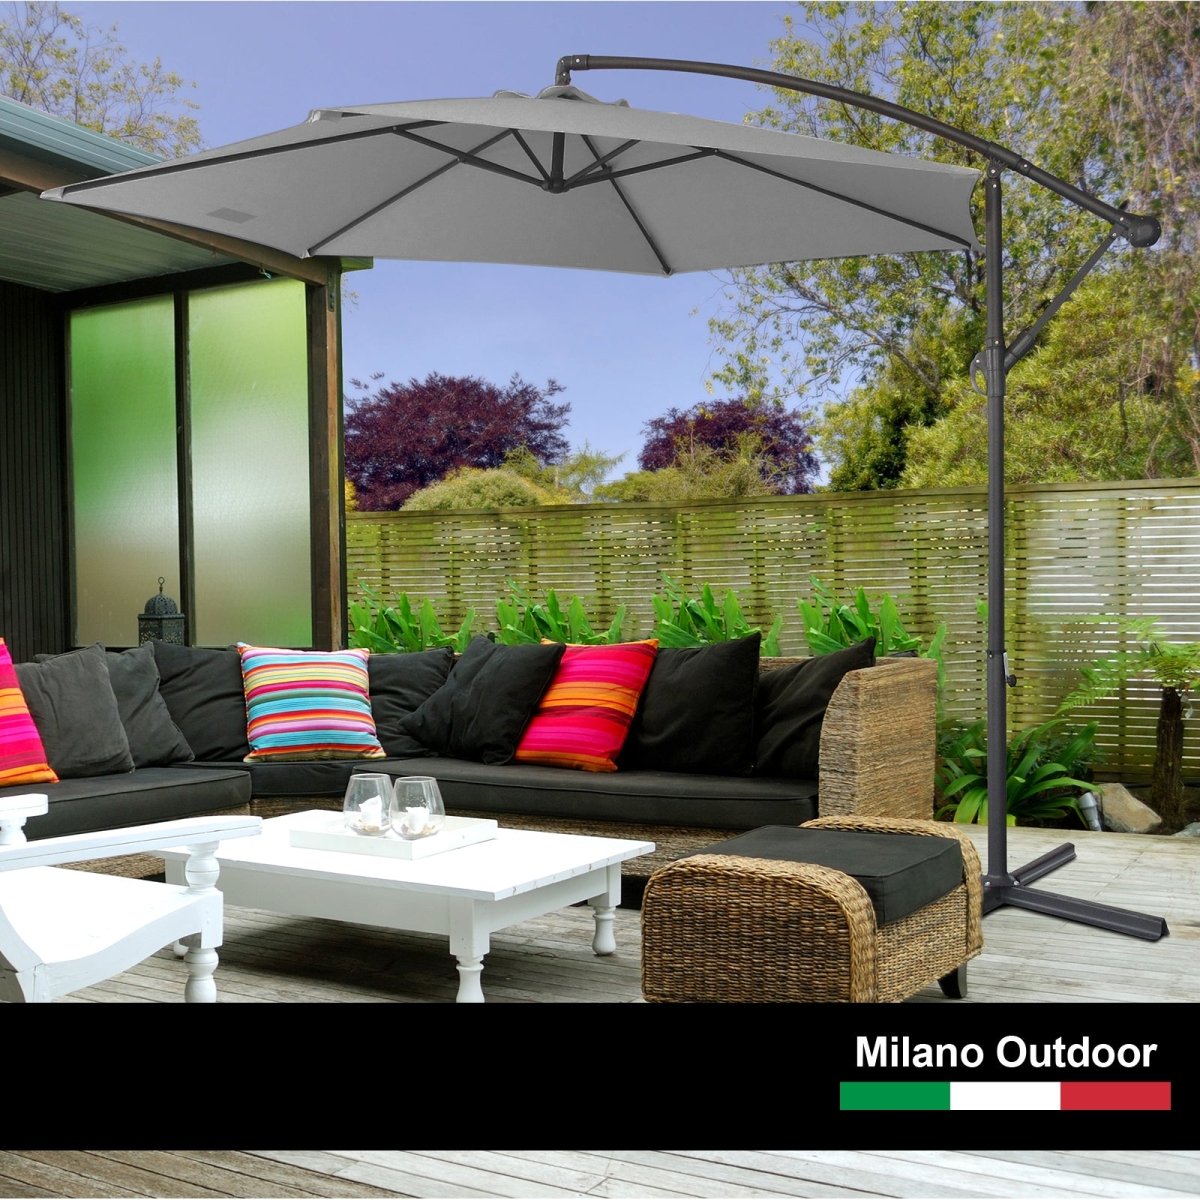 Milano 3M Outdoor Umbrella Cantilever With Protective Cover Patio Garden Shade - Grey - Outdoor Immersion